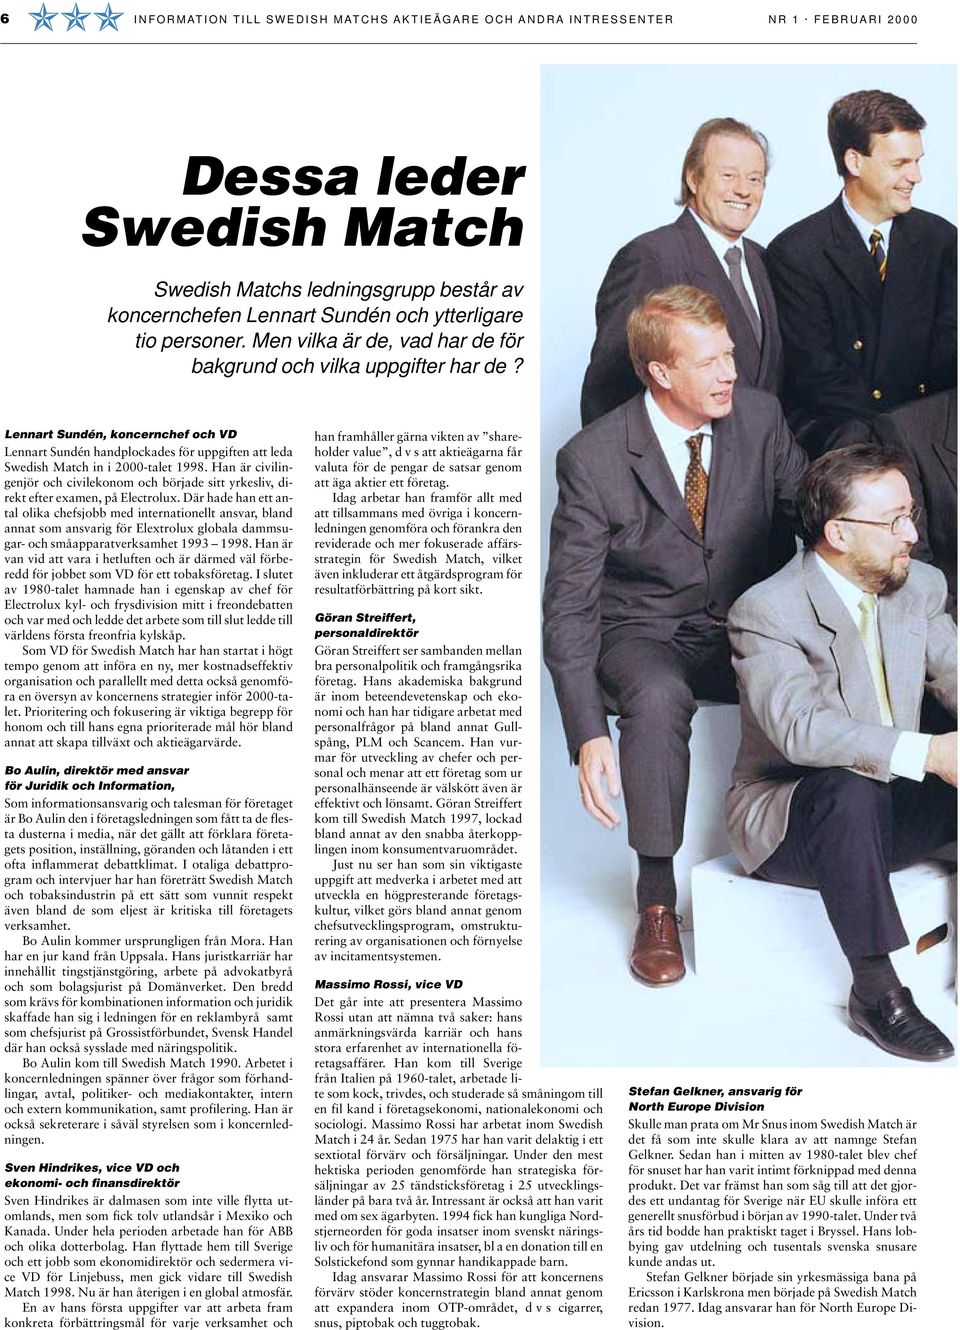 Lennart Sundén, koncernchef och VD Lennart Sundén handplockades för uppgiften att leda Swedish Match in i 2000-talet 1998.